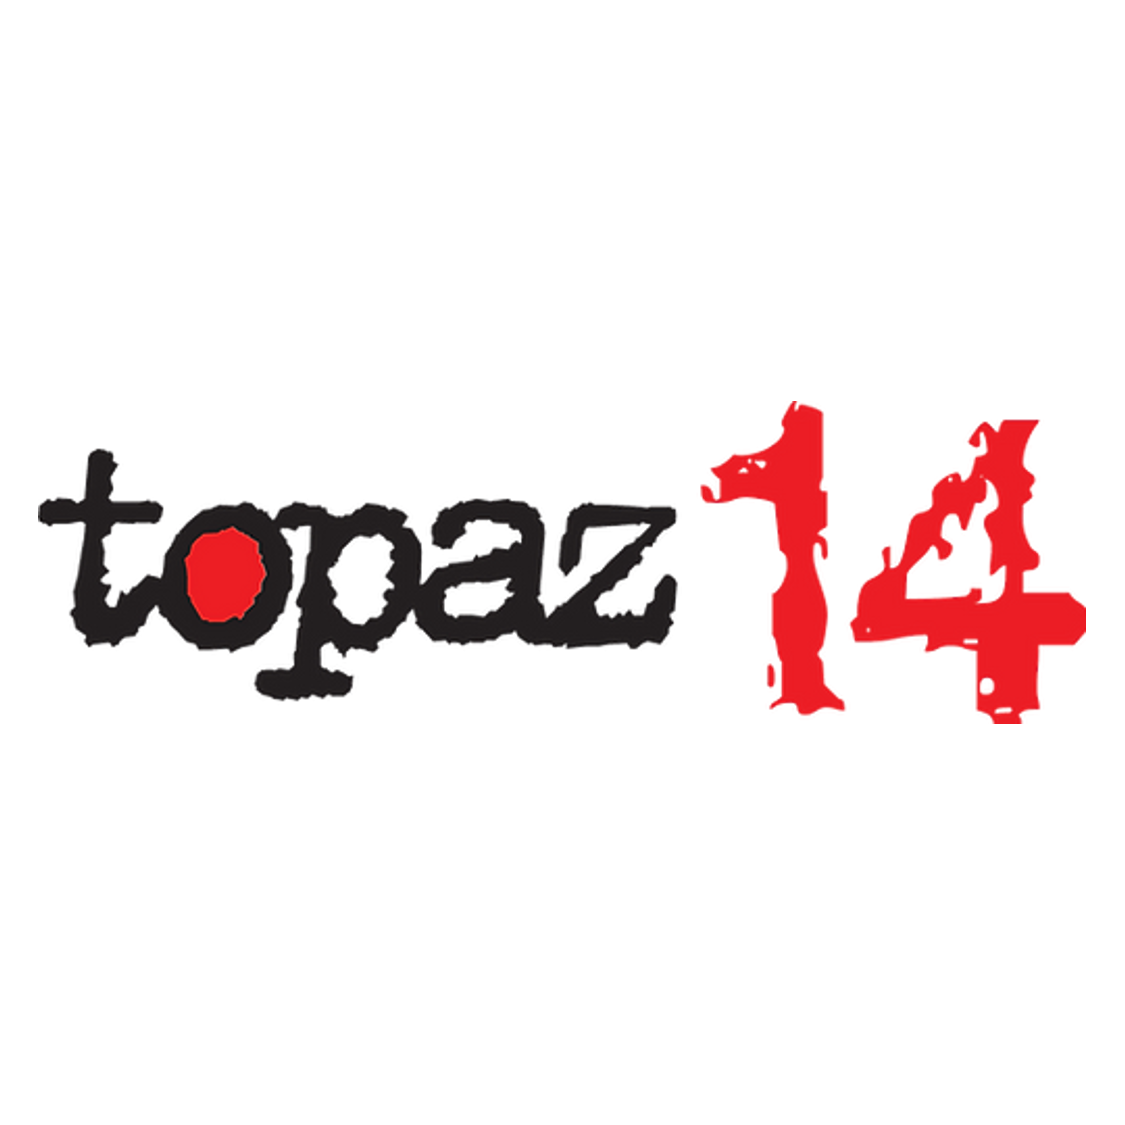 Kompatibel Topaz 14